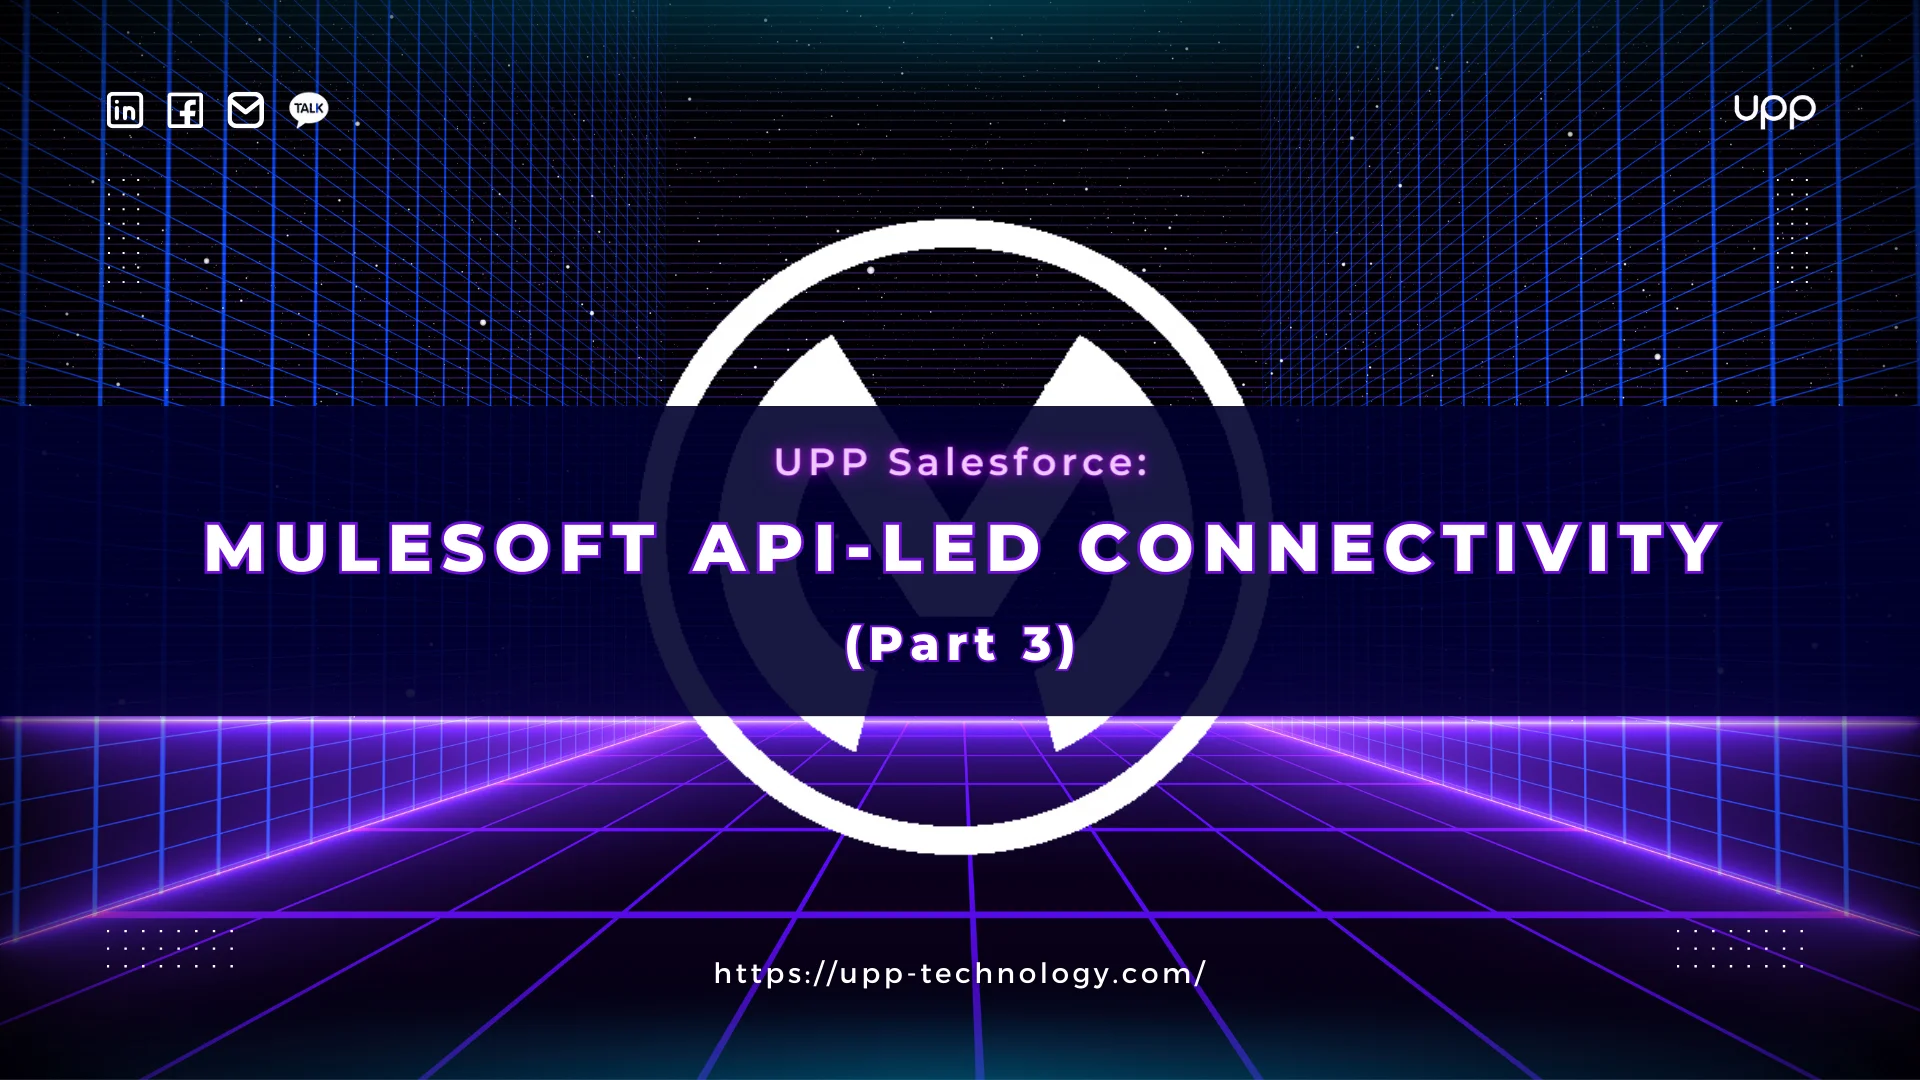 MuleSoft API - led Connectivity (Part 3)